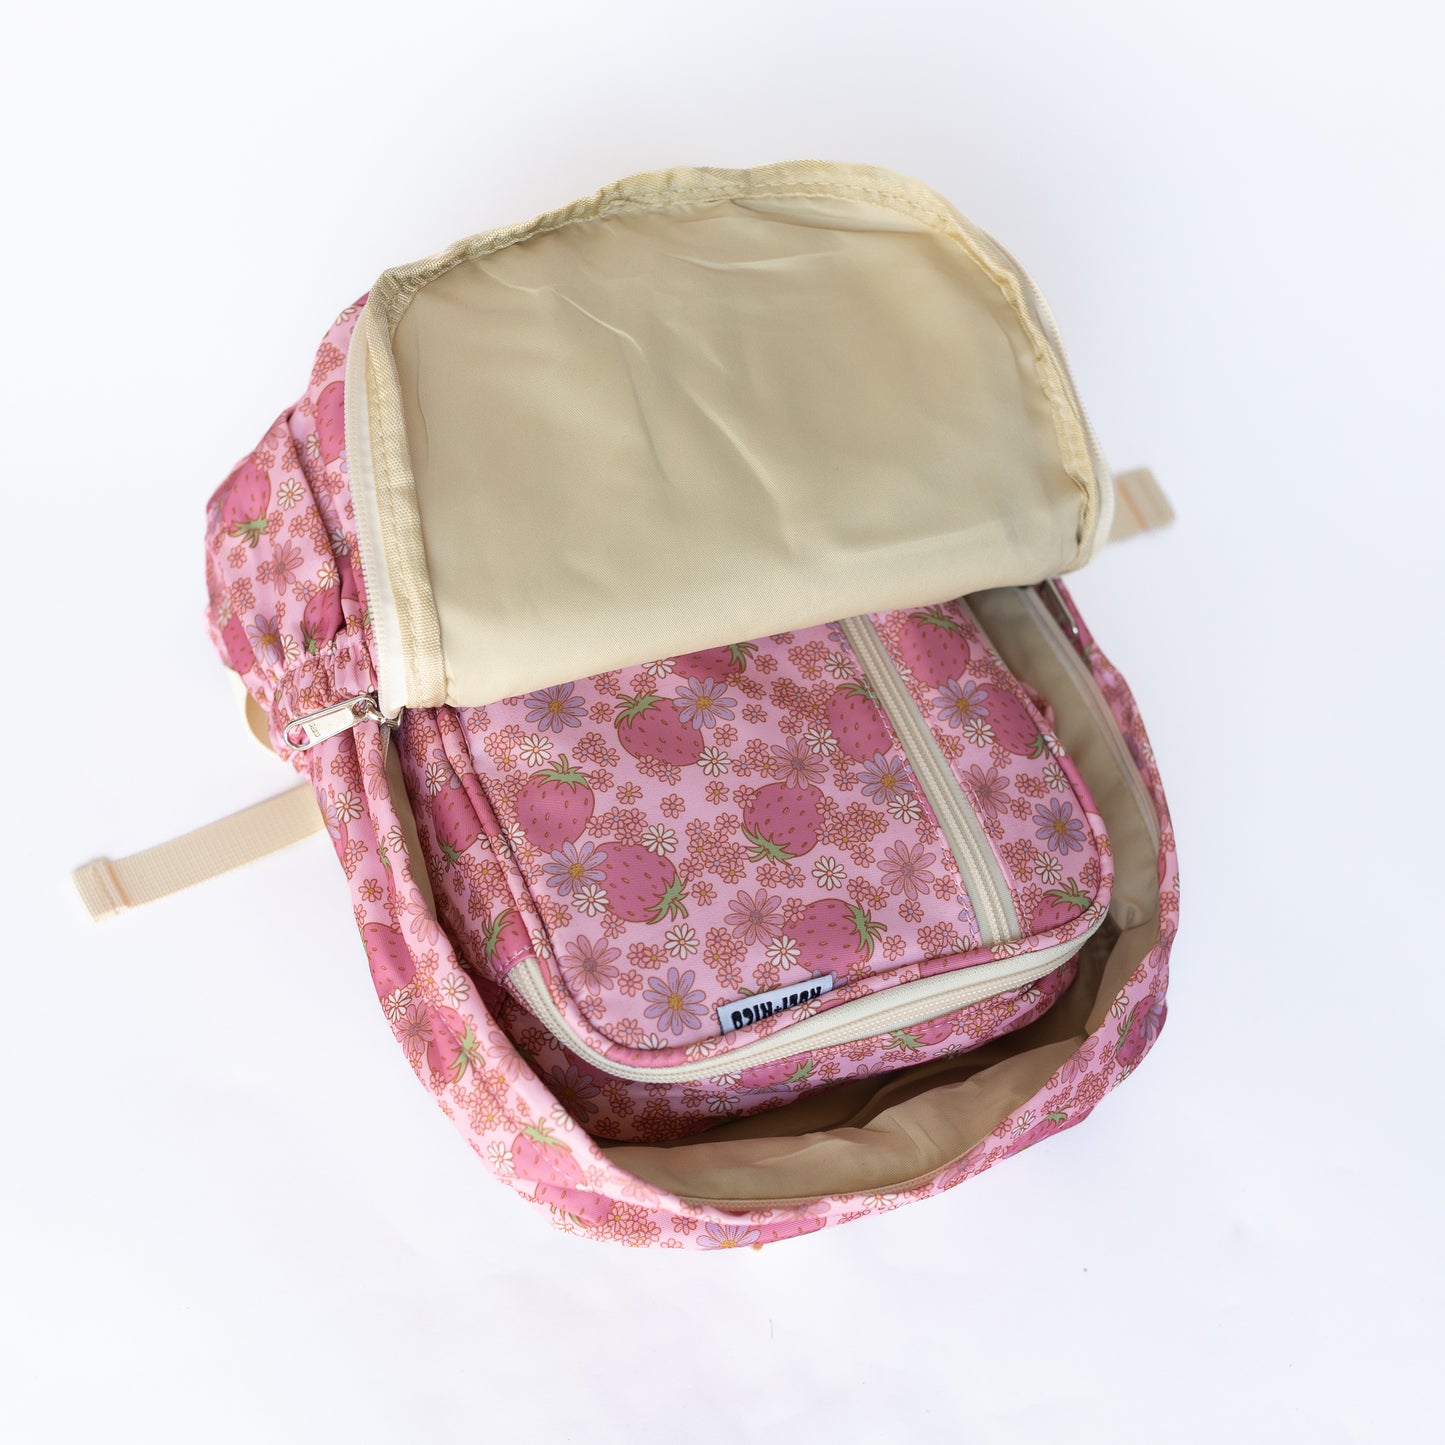 Mini Backpack || Retro Strawberries